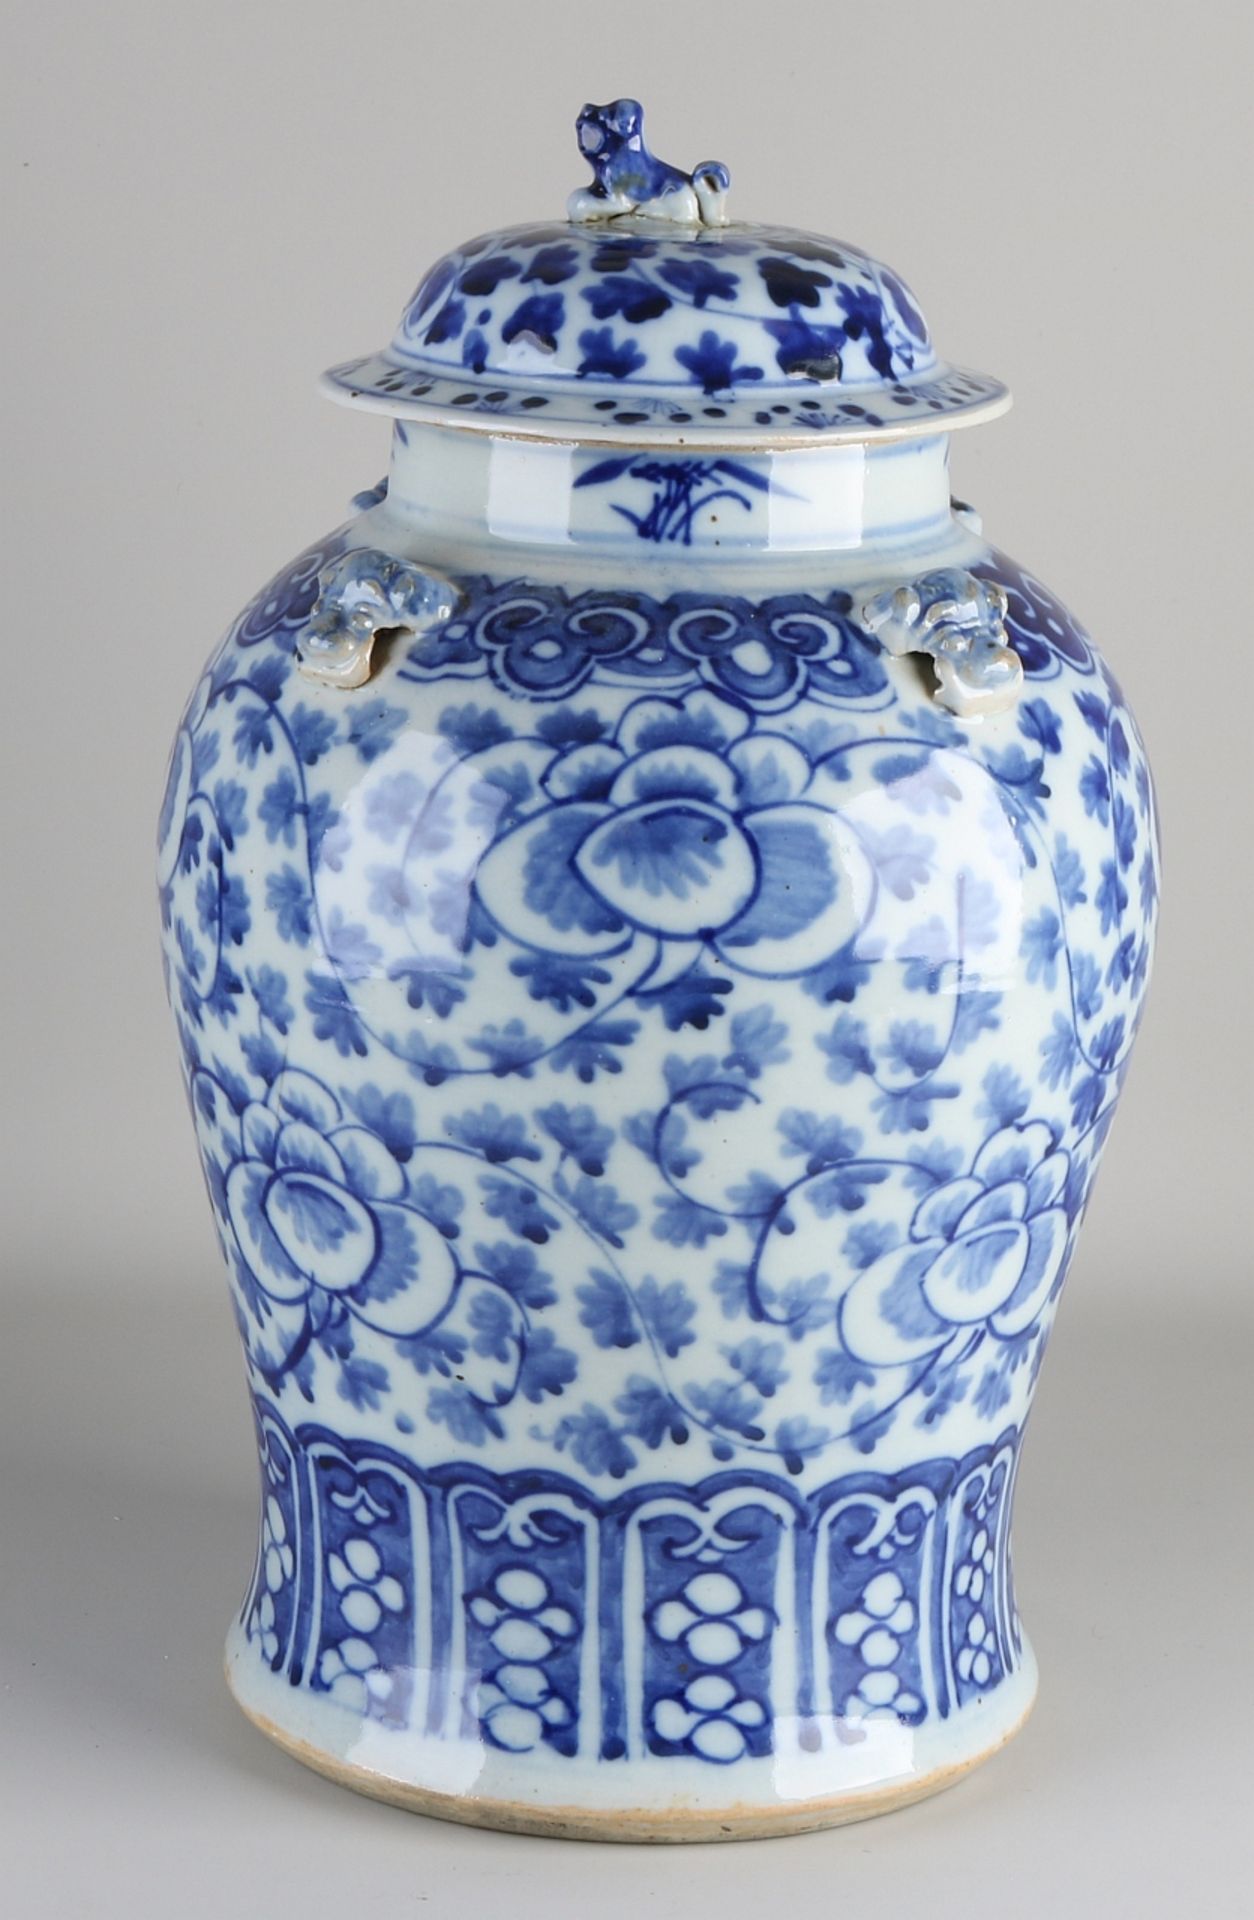 Vase aus chinesischem Porzellan aus dem 18. - 19. Jahrhundert mit Blumendekor + Foo-Hund. Foo Hund